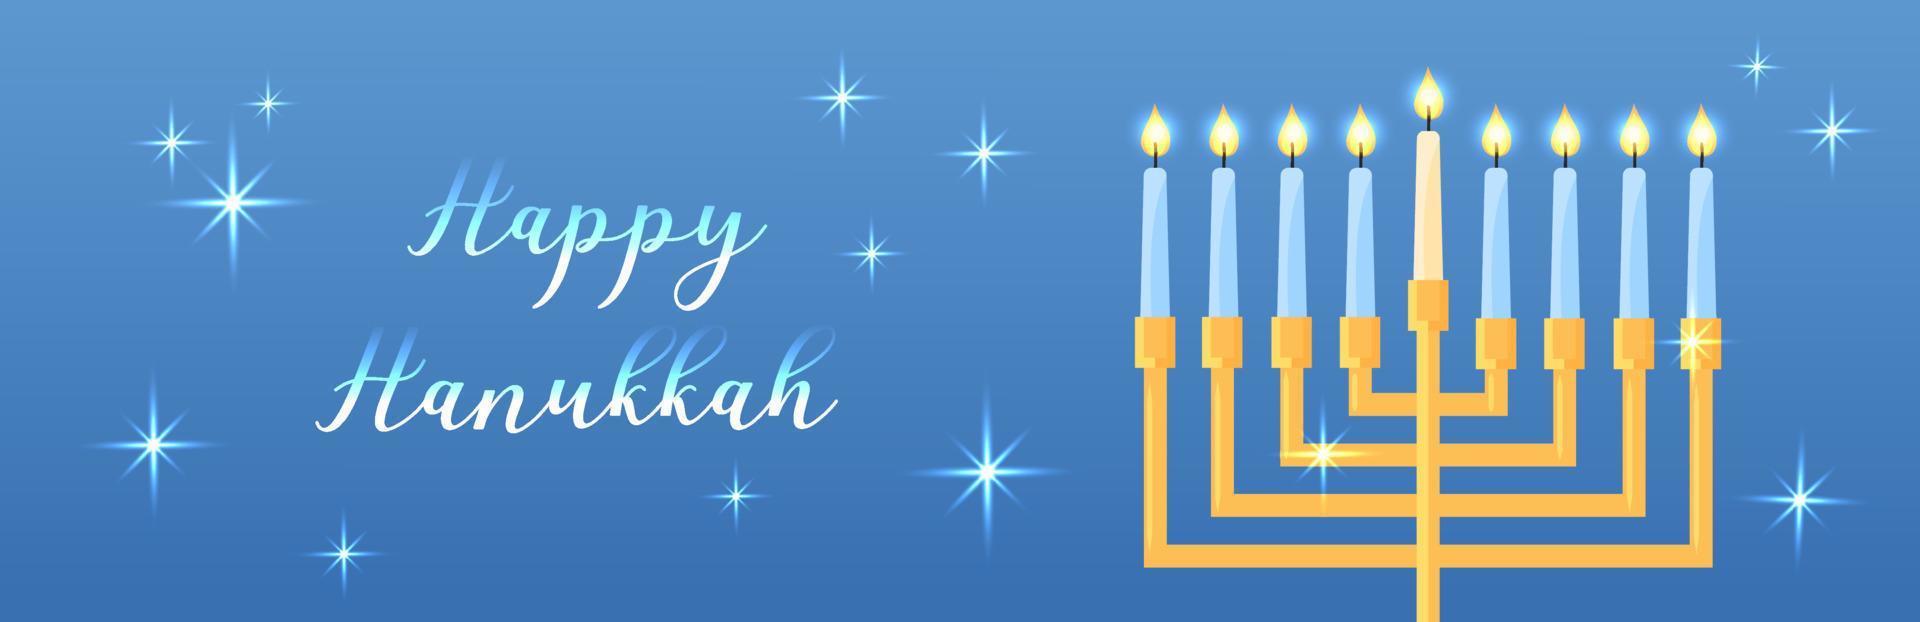 banner web feliz hanukkah. ilustración horizontal vectorial con símbolo tradicional de festividad religiosa judía. candelabro de januquiá brillante. brillante banner de internet vector